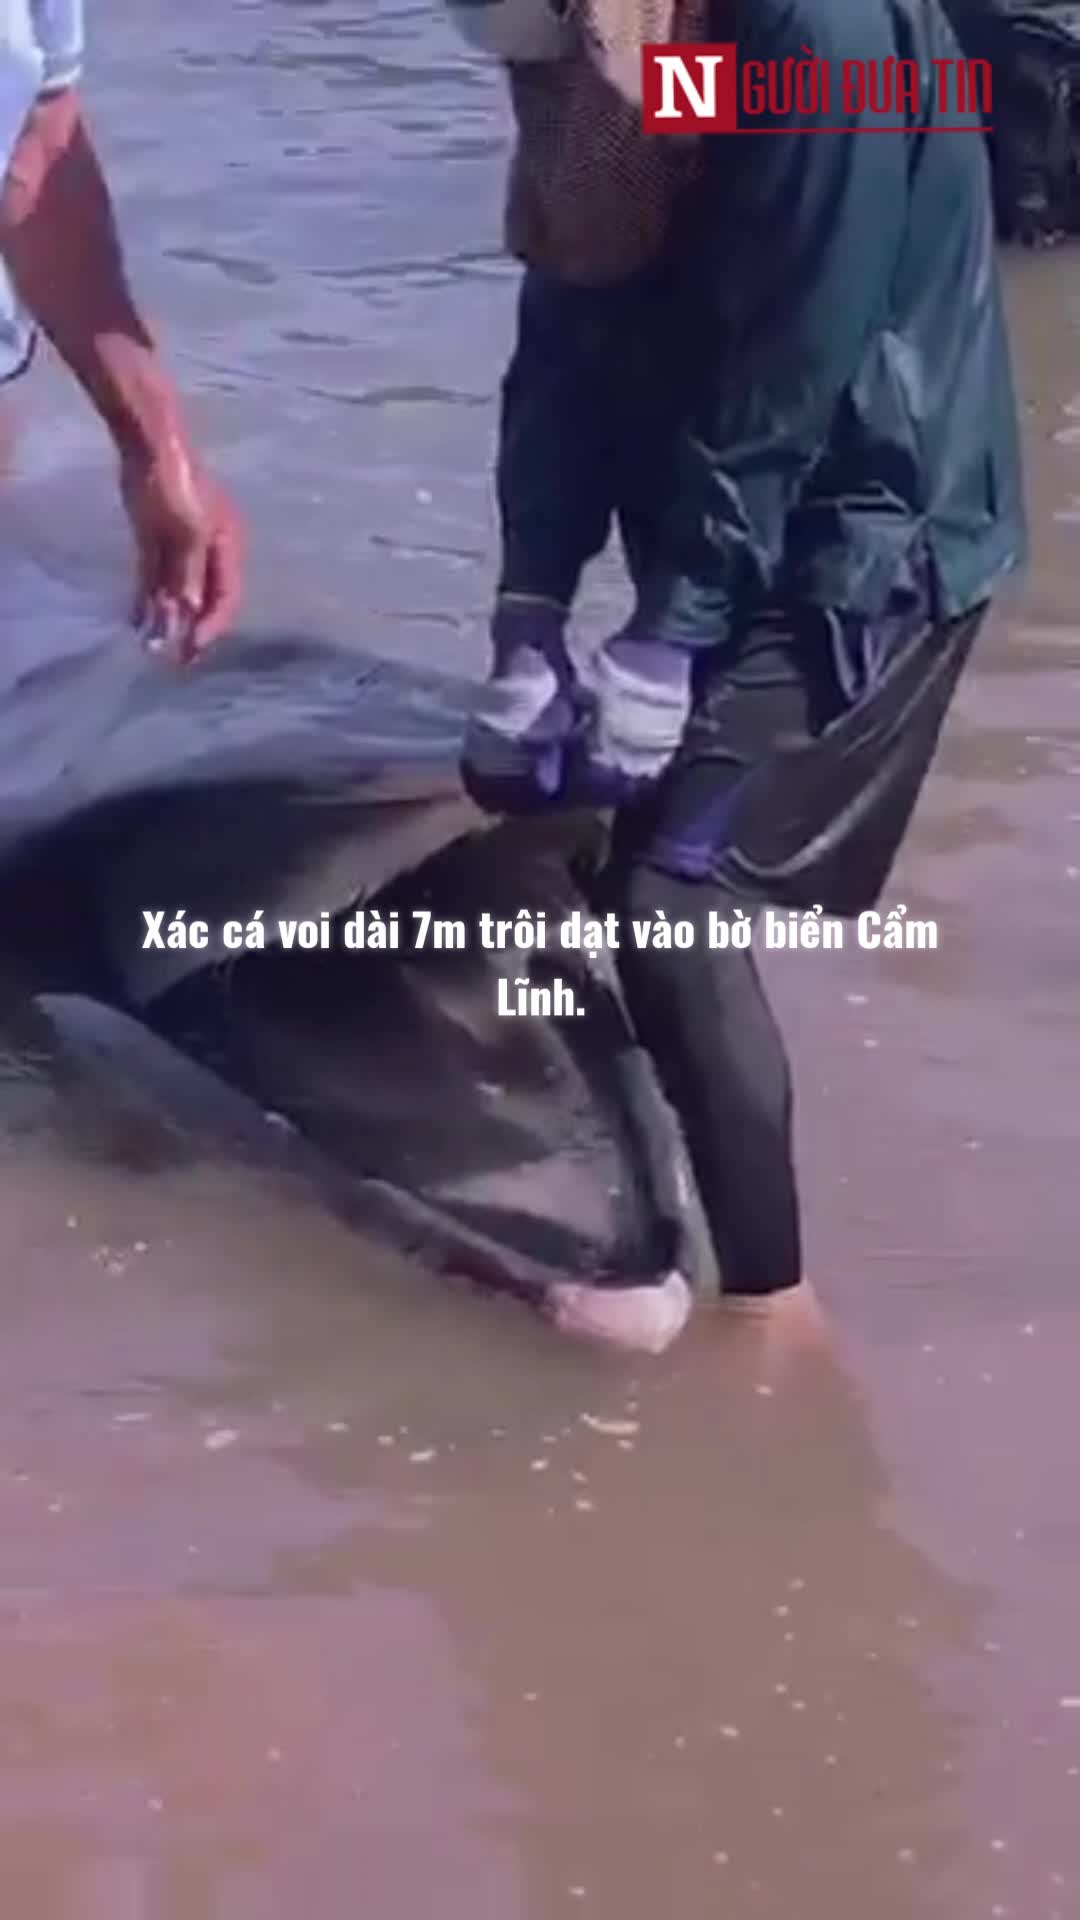 Dân sinh - Xác cá voi dài 7m trôi dạt vào bờ biển Hà Tĩnh